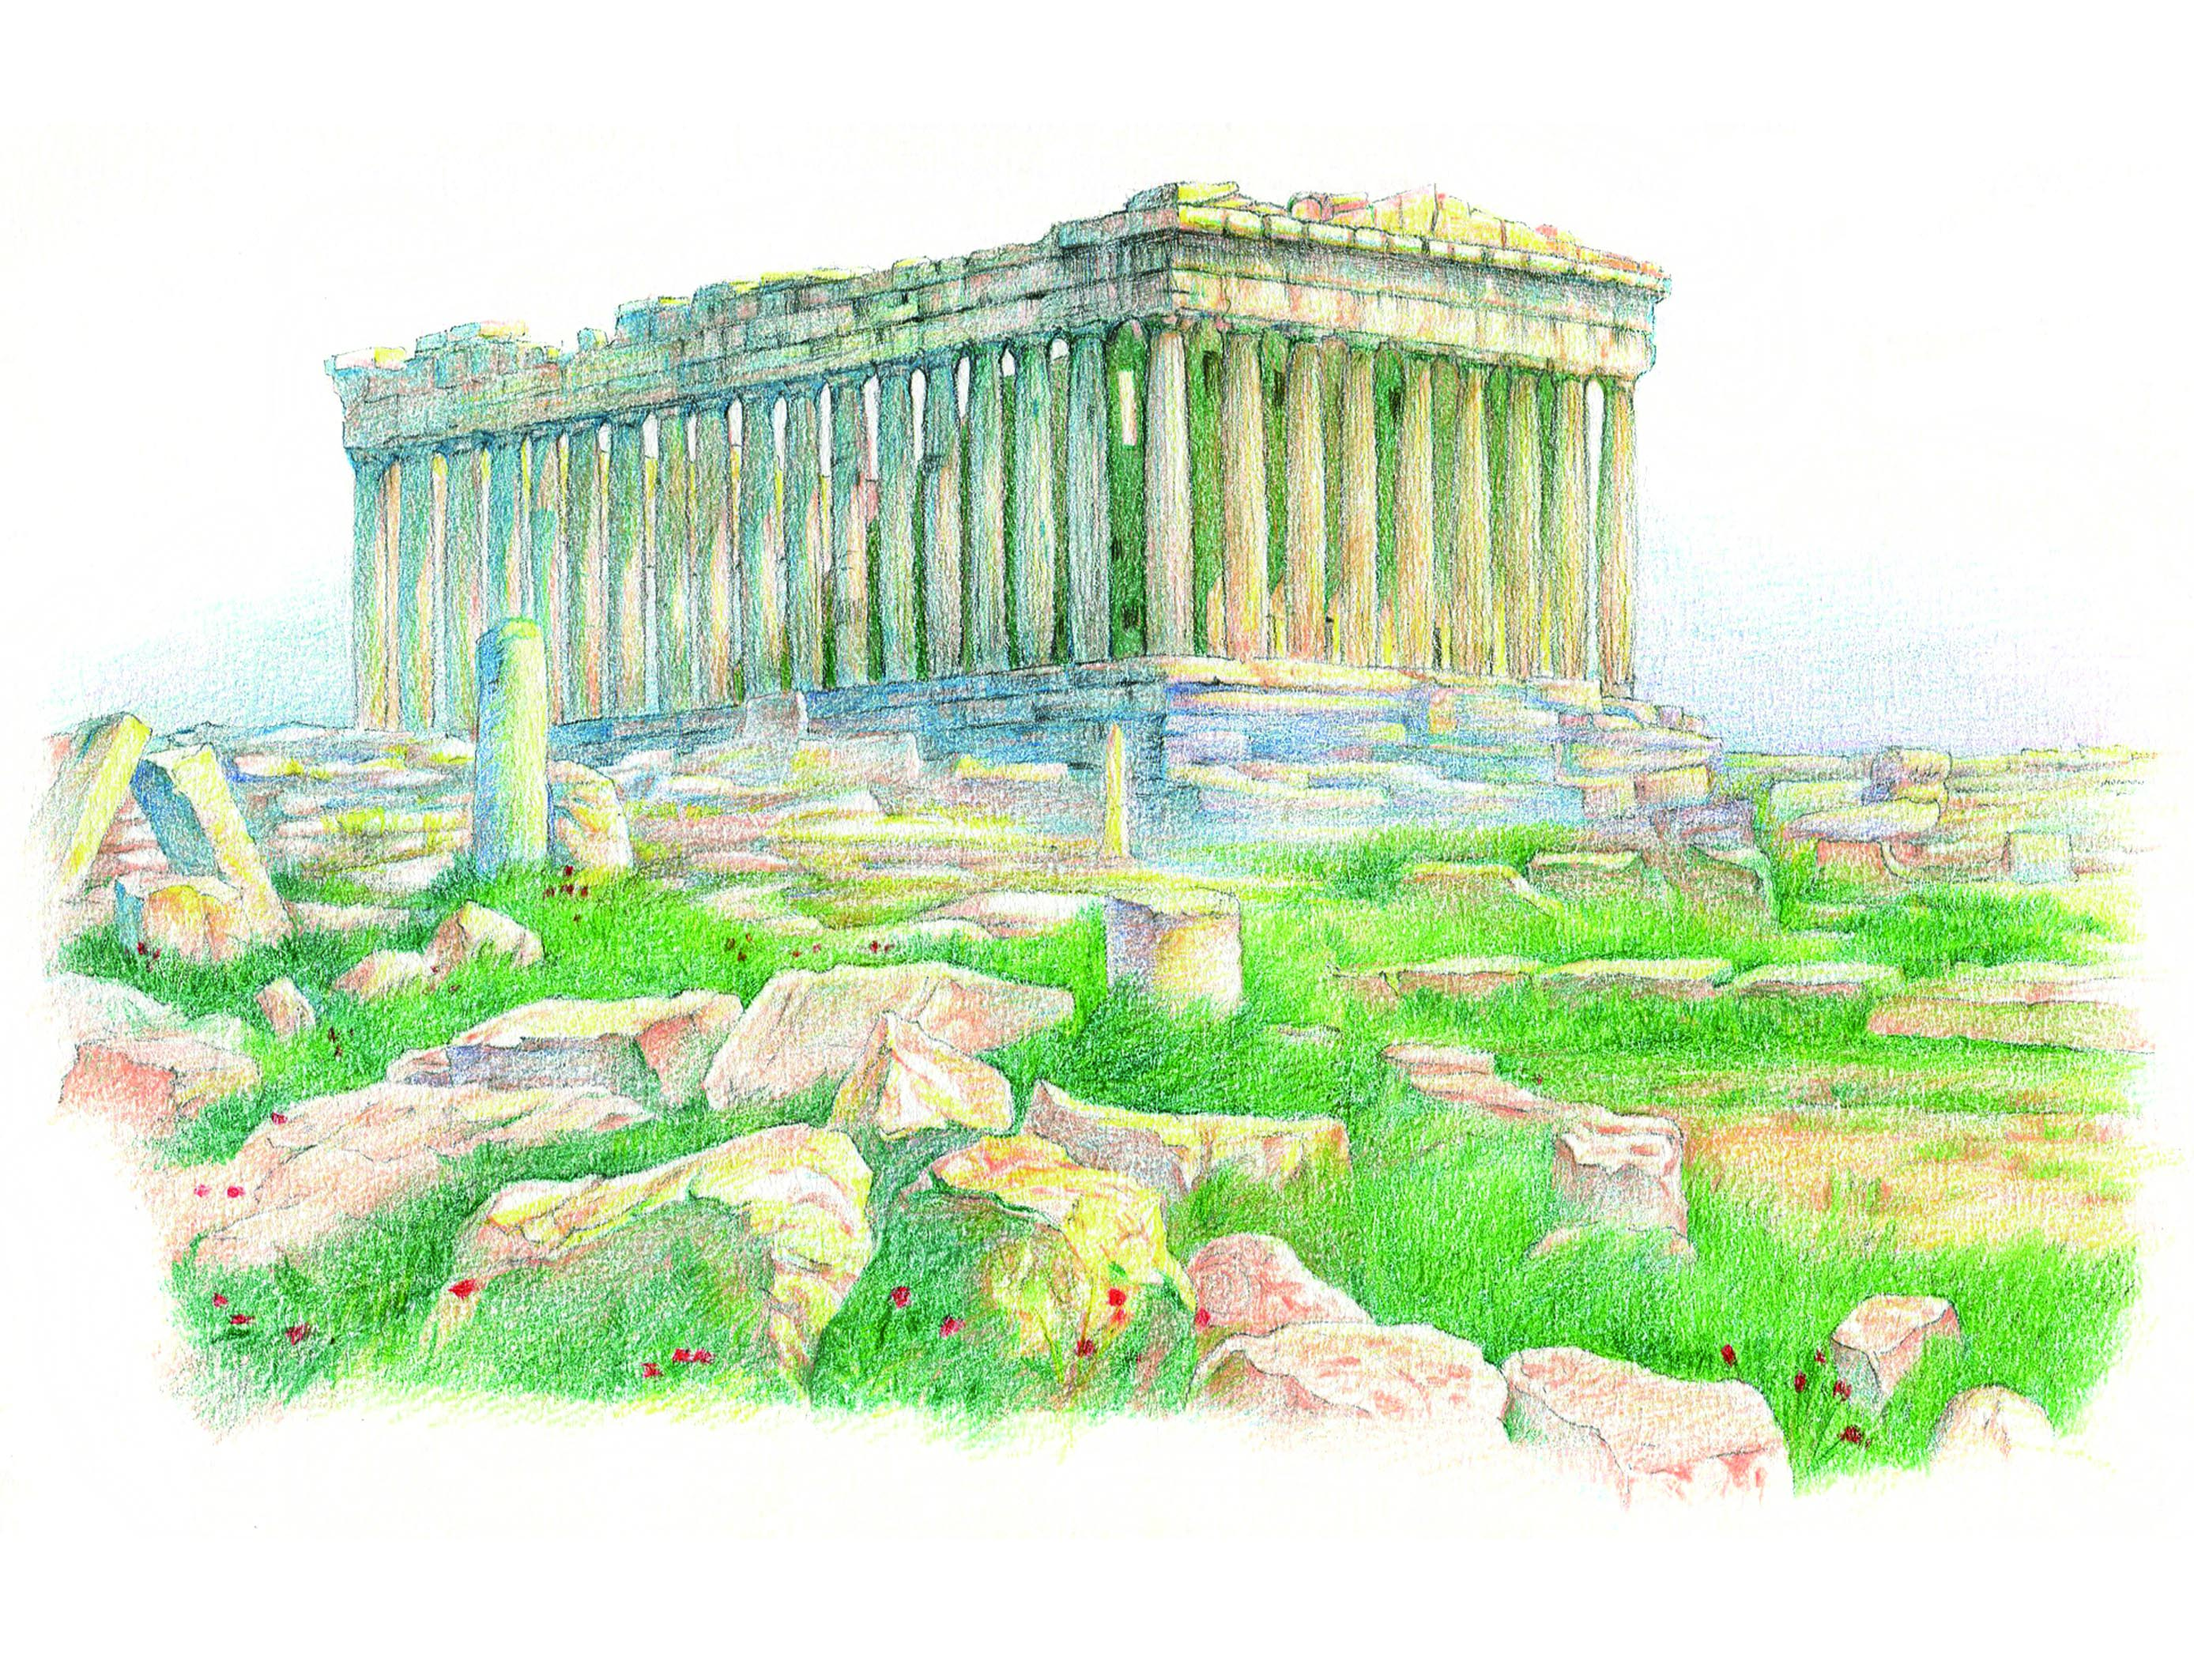 希腊,巴特农神庙摘自《hi,美风景——和色铅笔的30次唯美邂逅》